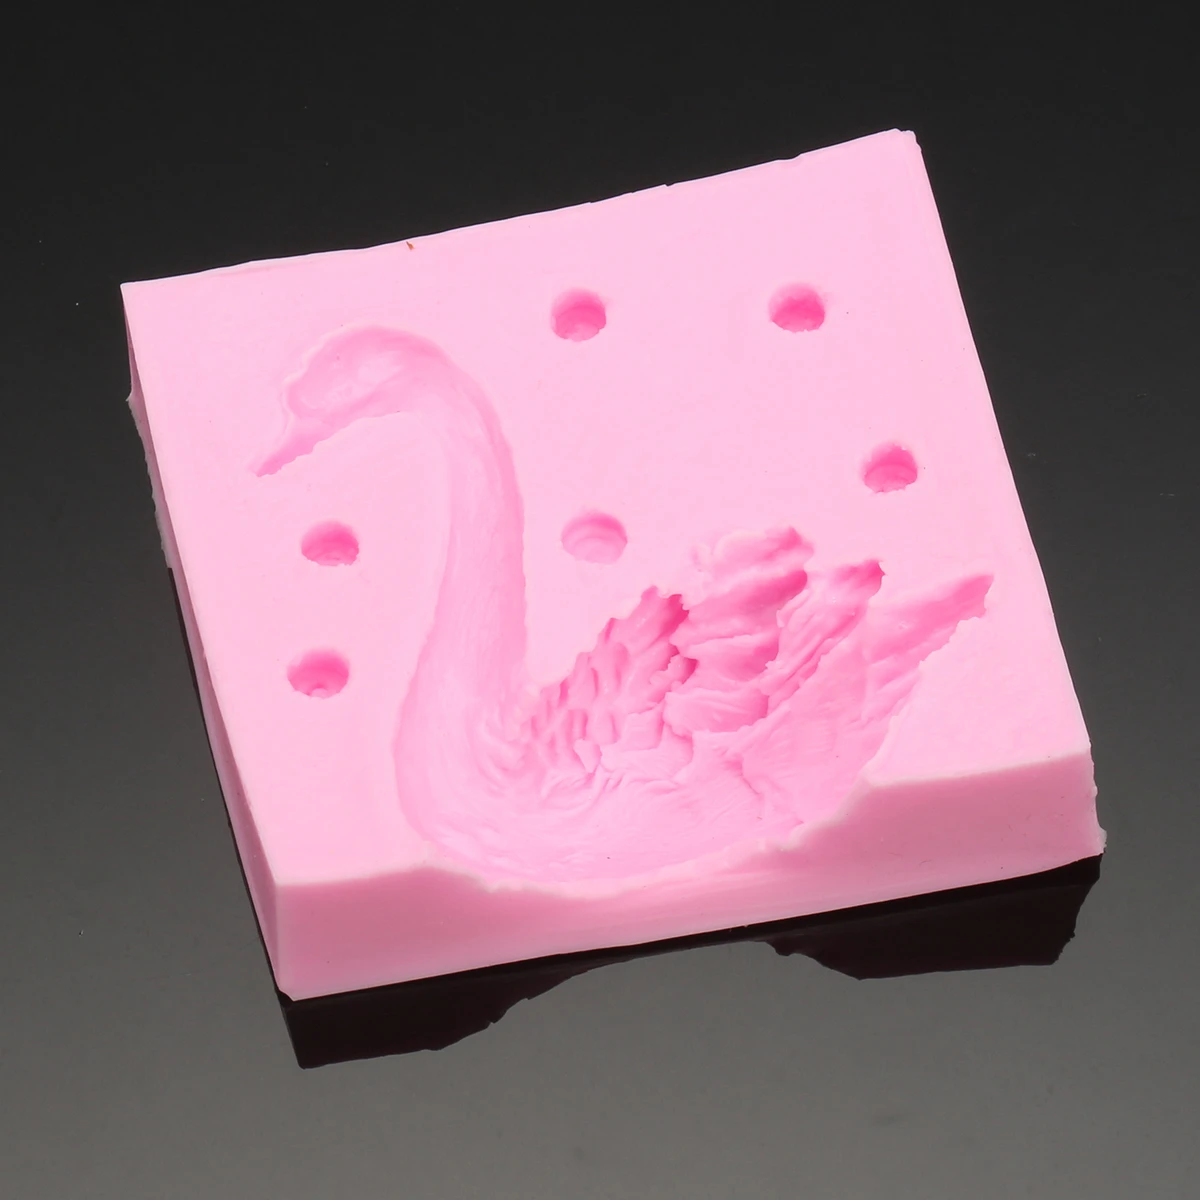 Aomily красивая 3D Лебедь помадка силиконовая форма для свеч инструмент для поделок из сахара форма для выпечки пирожных с шоколадной начинкой Кухня DIY выпечки украшения инструменты